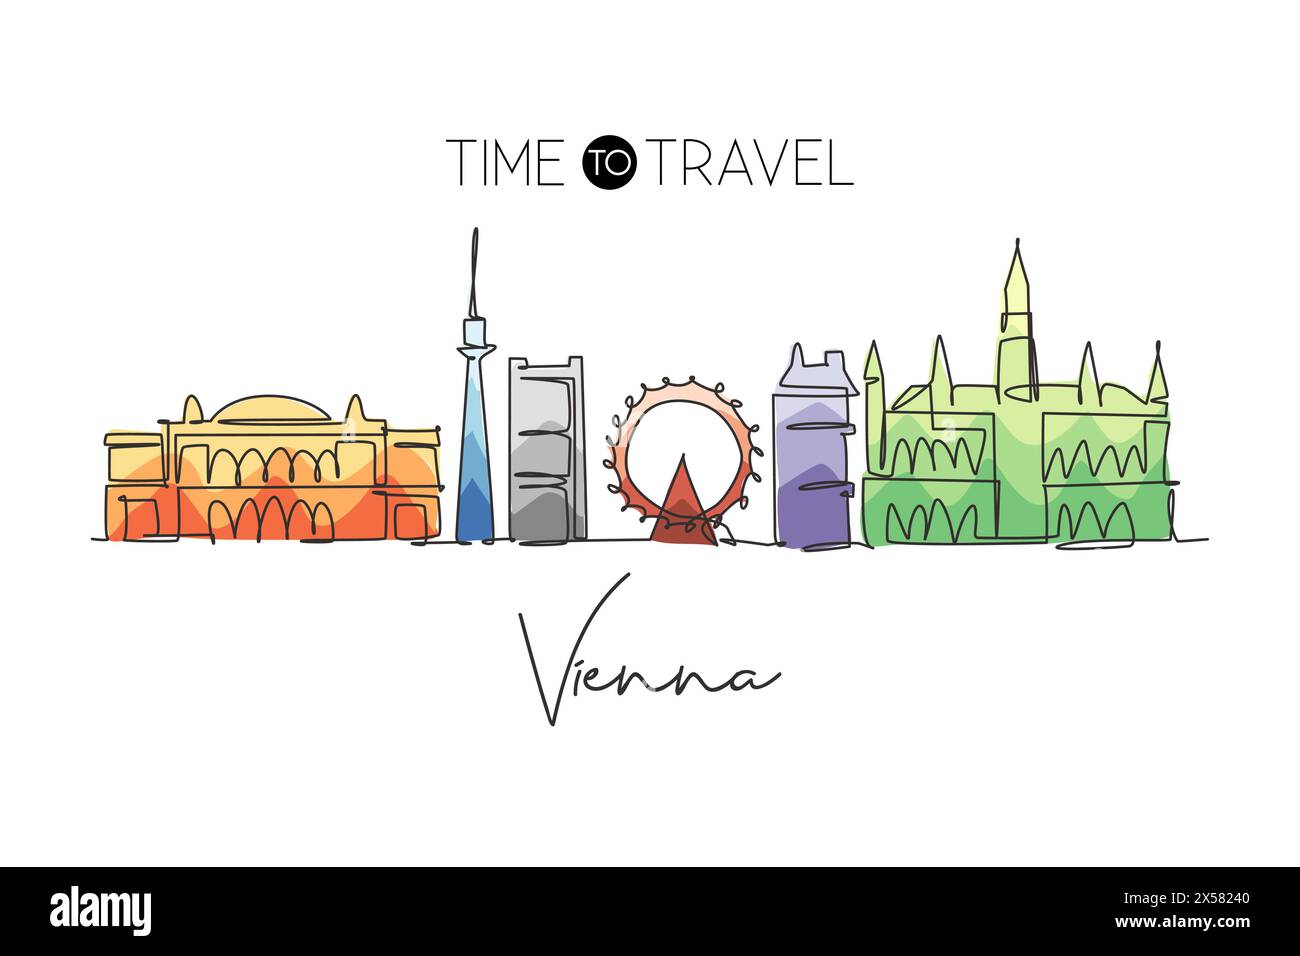 Una linea continua che disegna lo skyline di Vienna, Austria. Splendido punto di riferimento. Poster di vacanza World landscape Tourism Travel. Grafica elegante modificabile Illustrazione Vettoriale